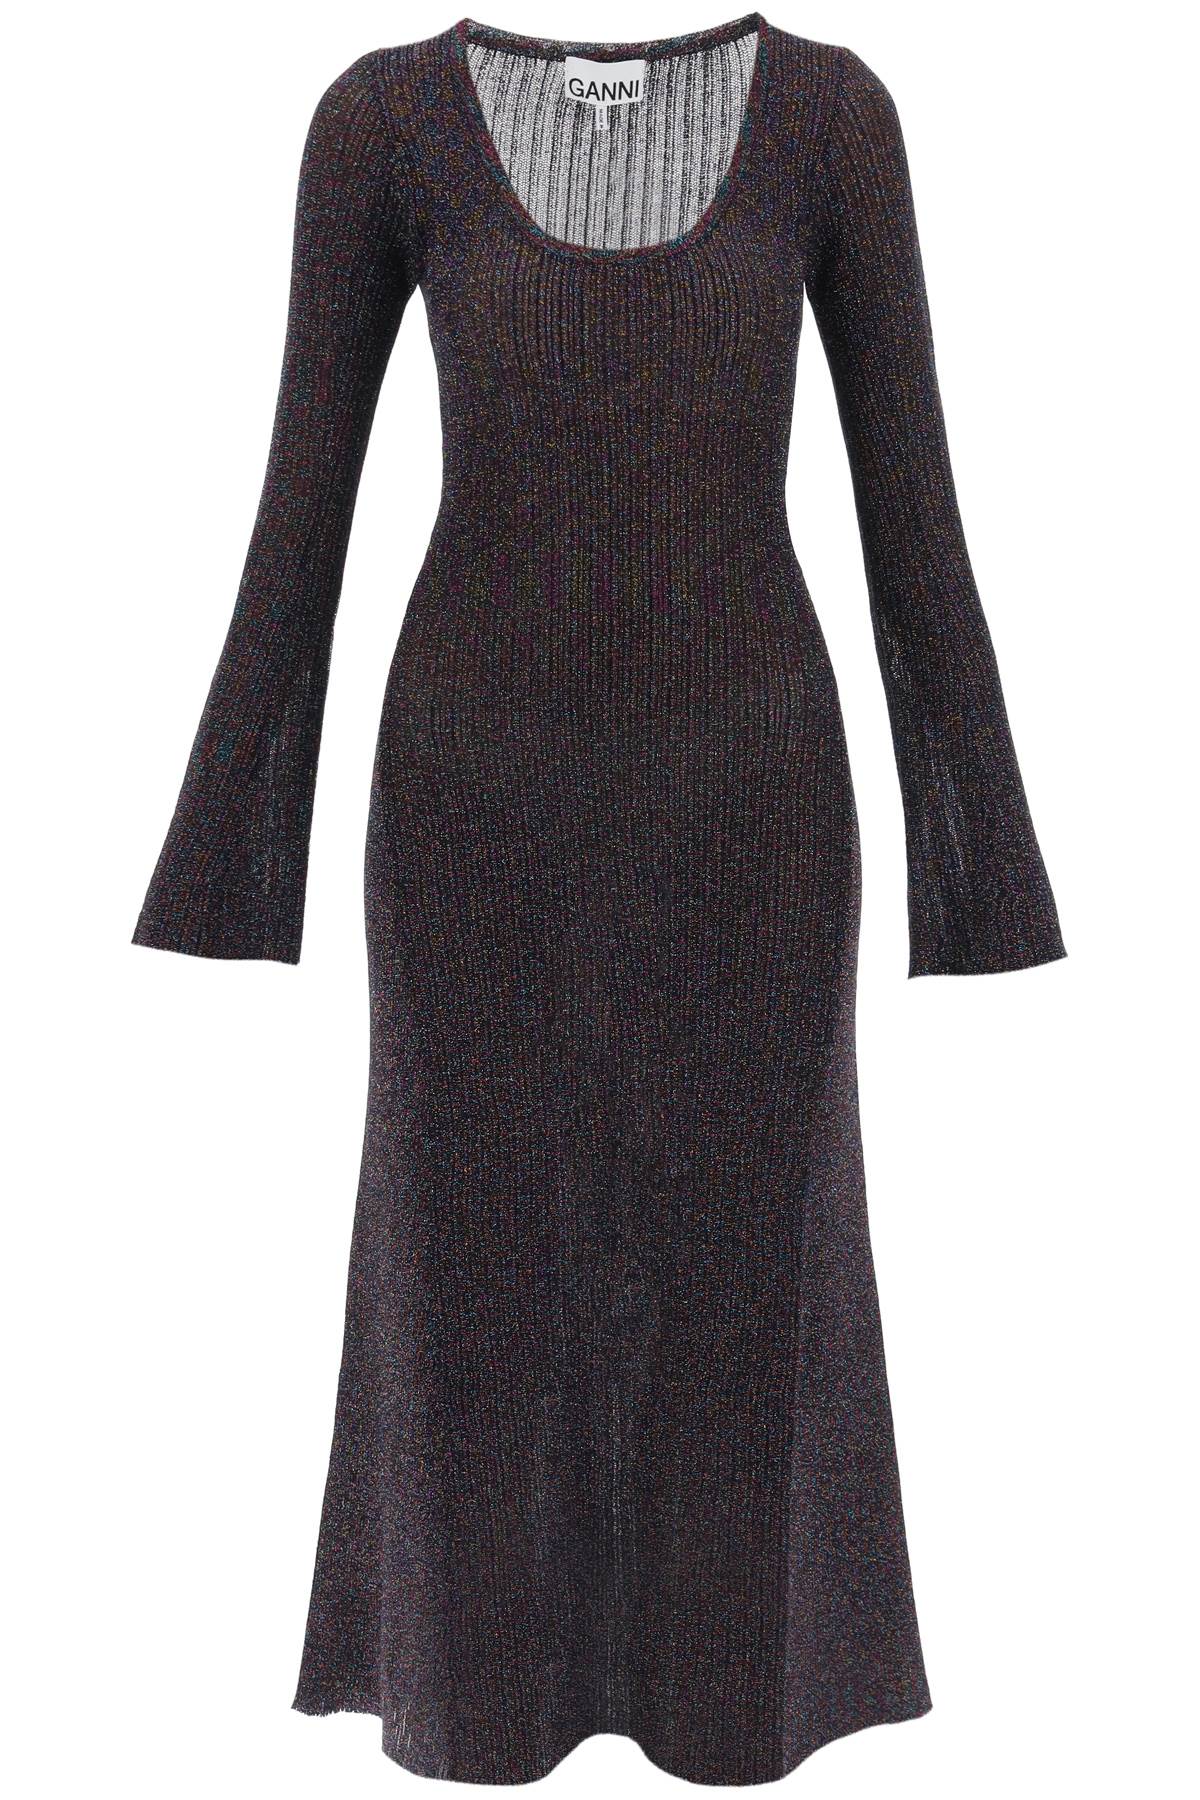 Ganni lurex-knit midi dress-0